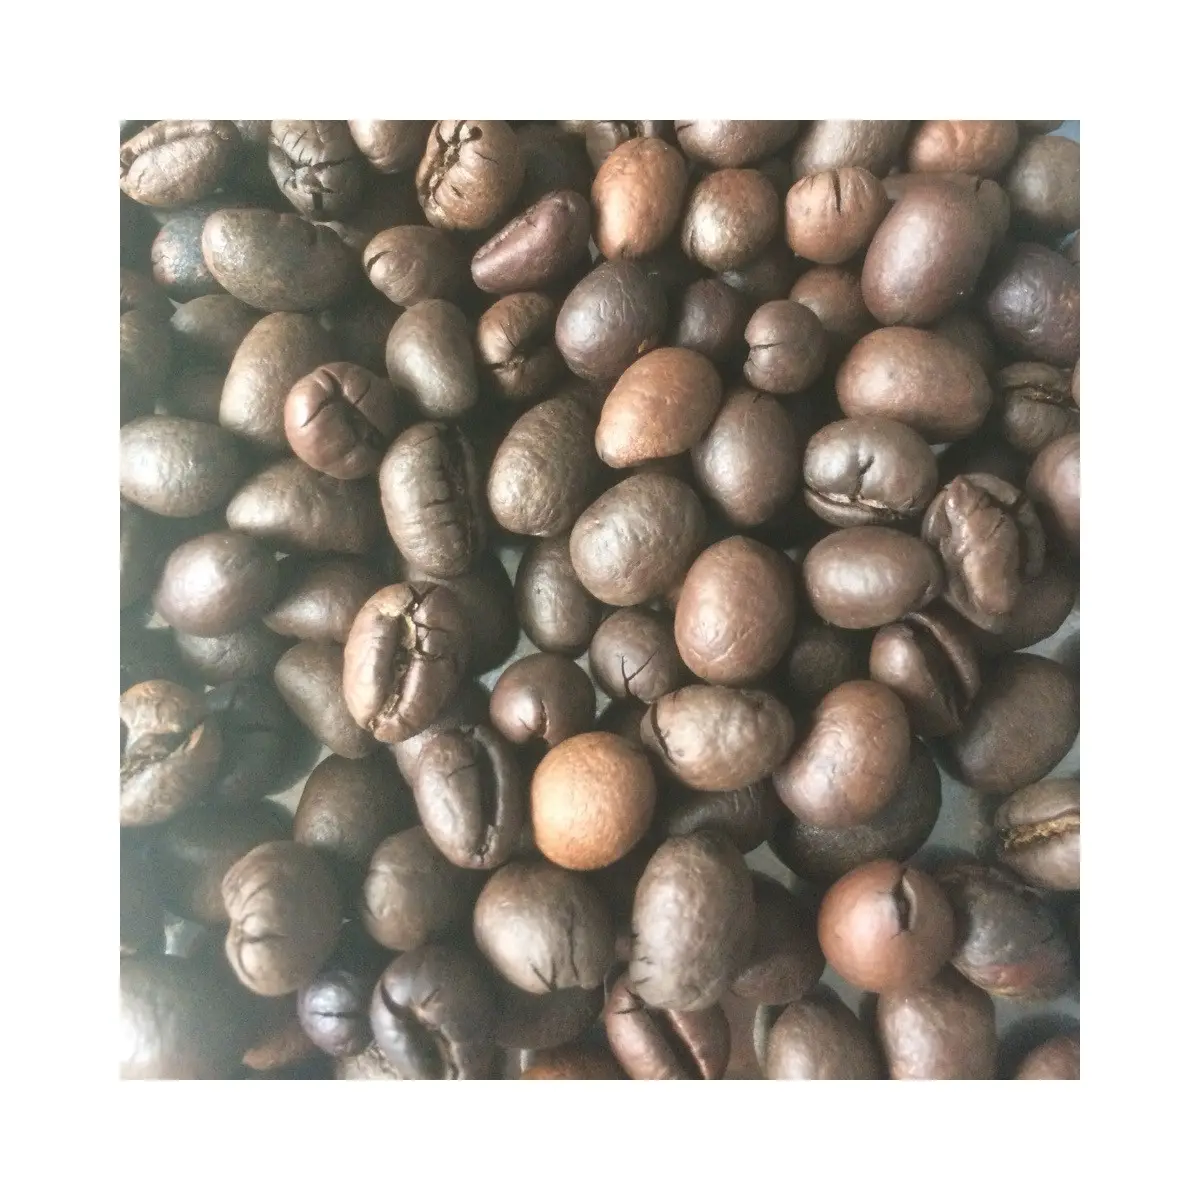 Prezzo ragionevole tostato Robusta Arabica chicchi di caffè organico fresco con l'alta qualità scuro puro Flavour